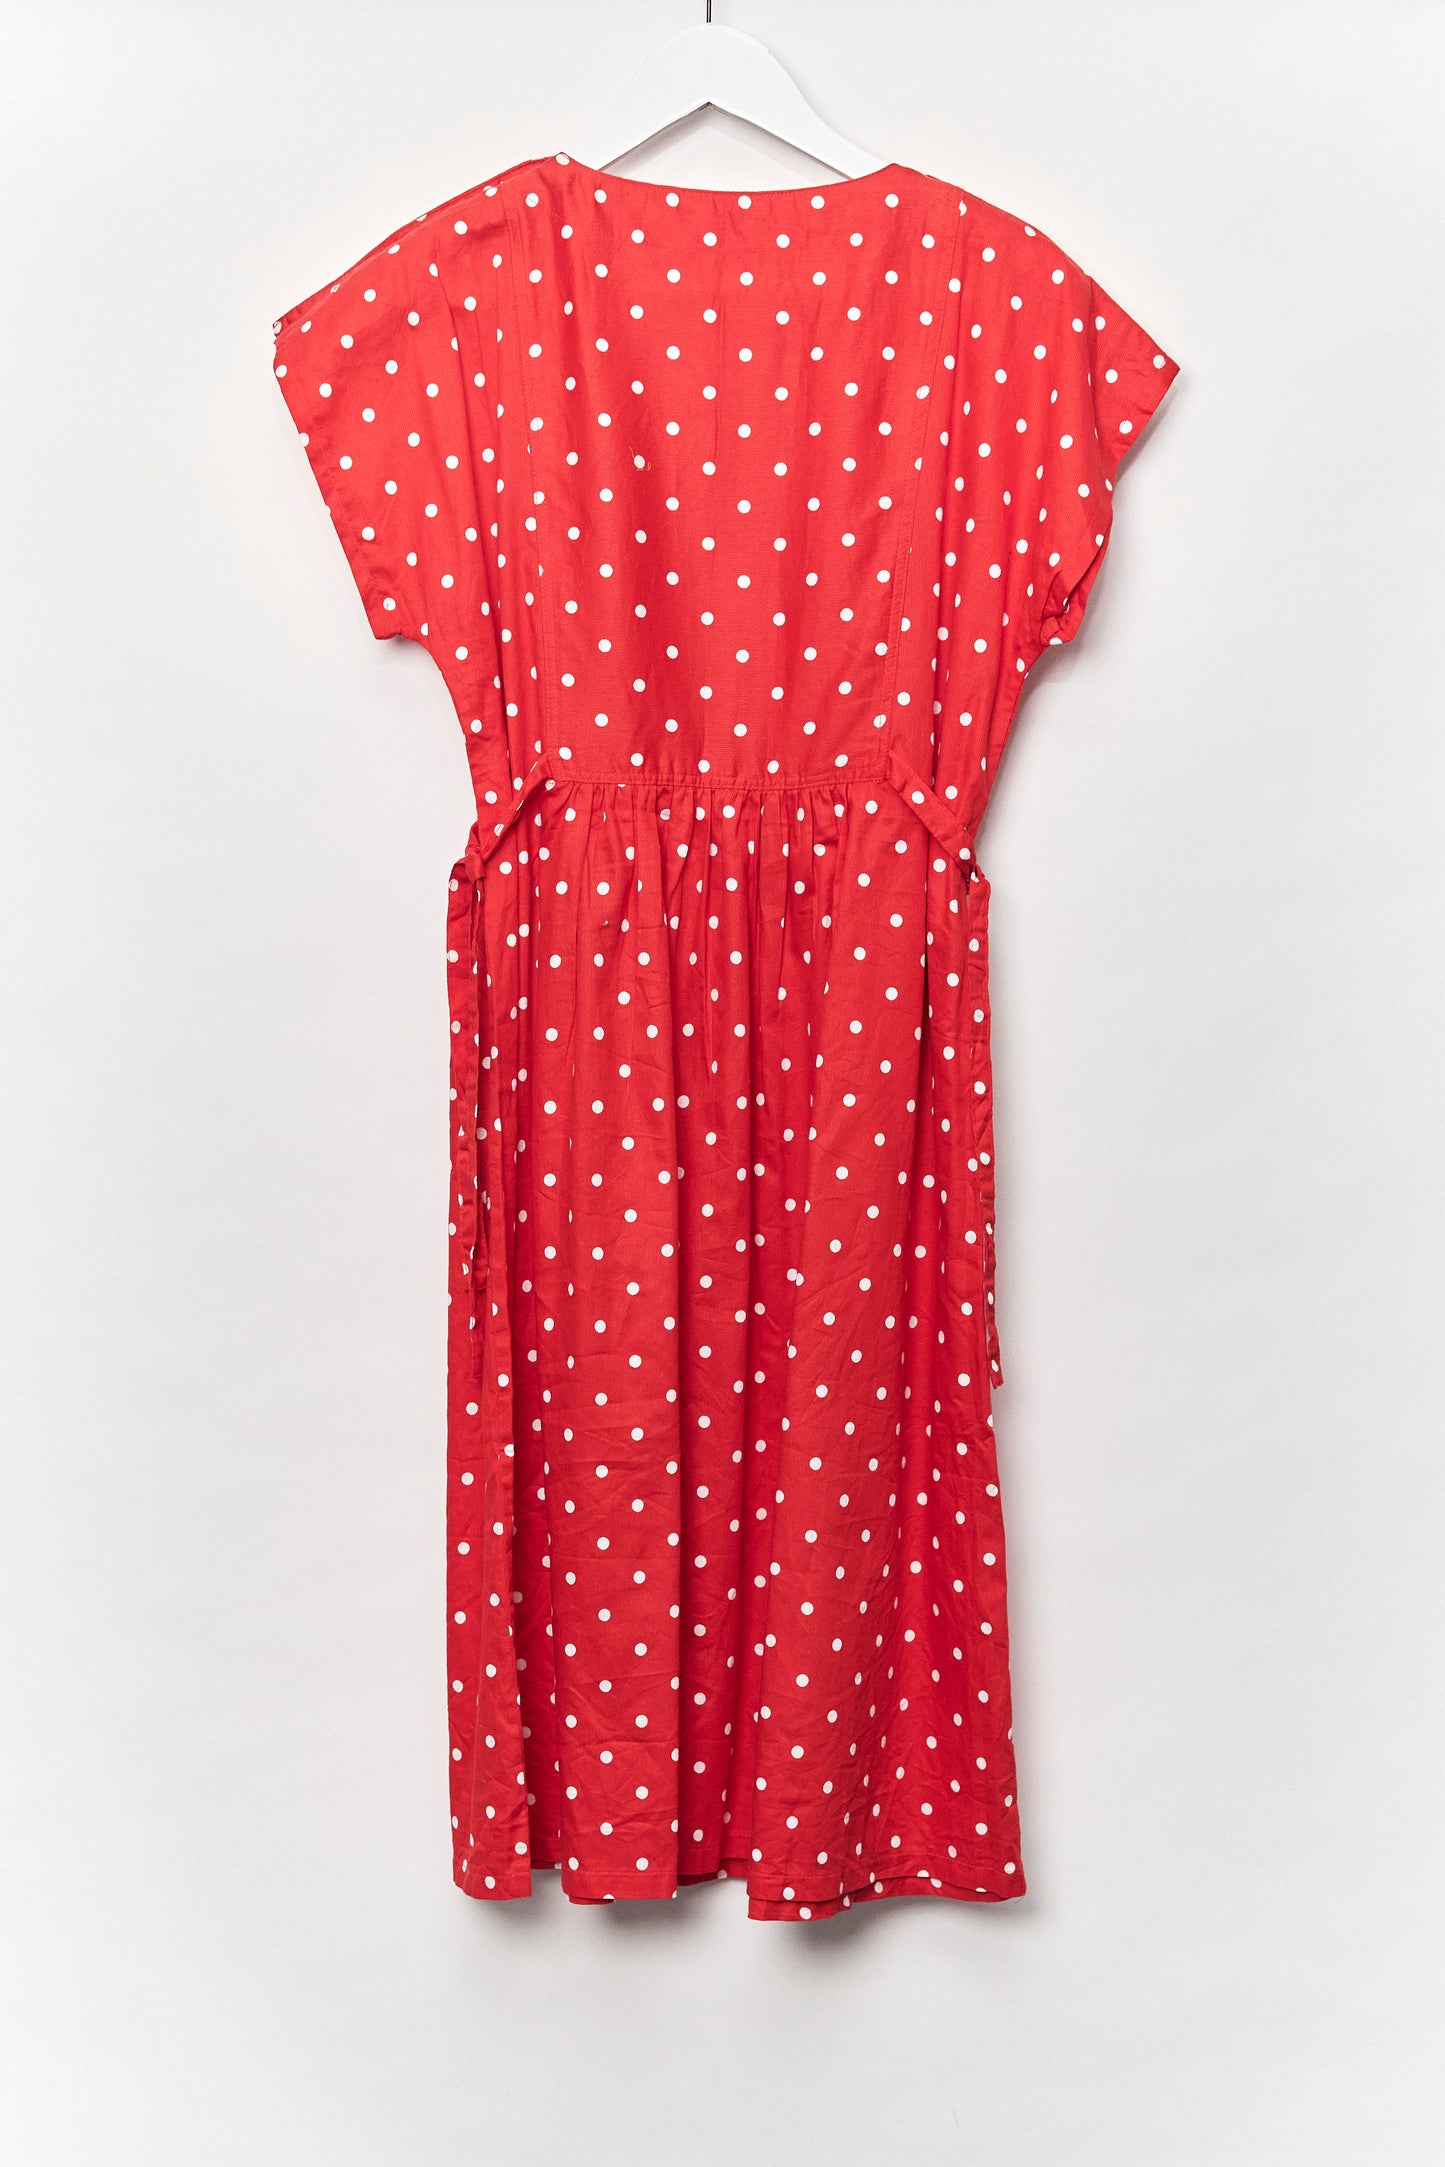 Womens Red polkadot dress size 10-12